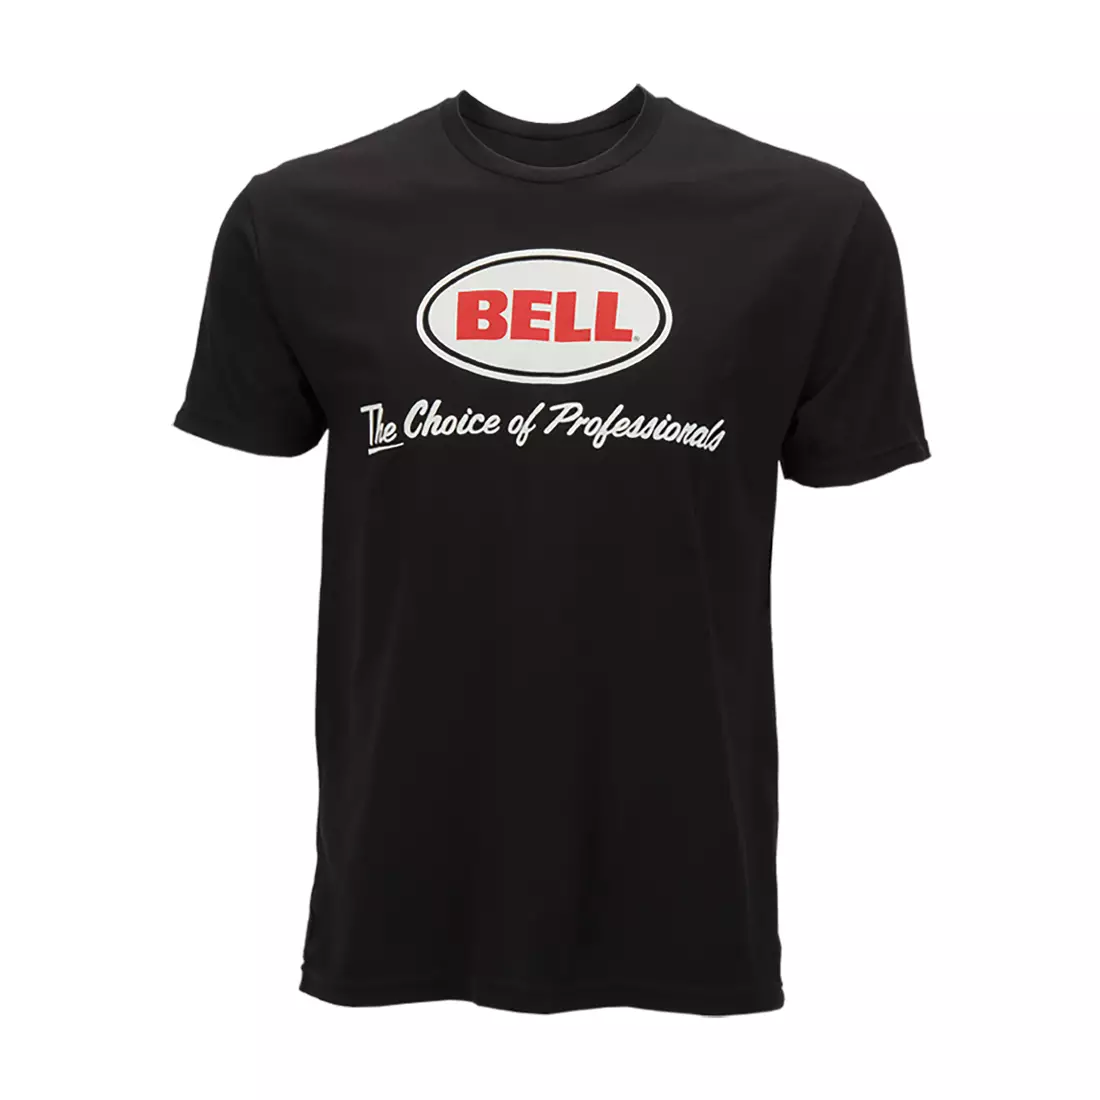 BELL pánské tričko s krátkým rukávem BASIC CHOICE OF PROS černé BEL-7070715